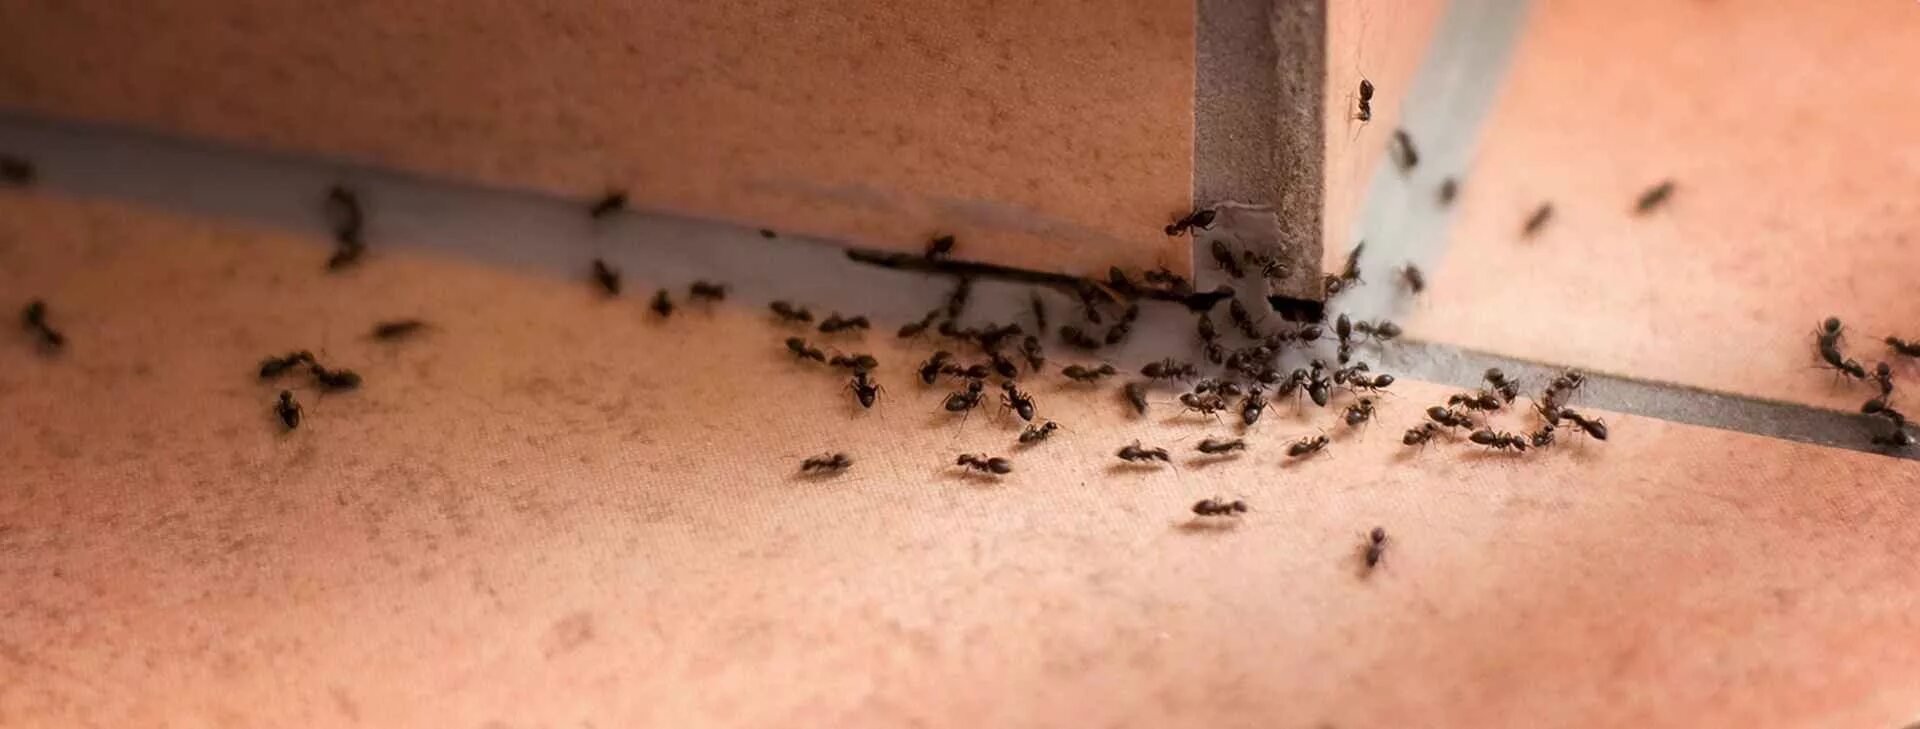 Почему появляются муравьи. Муравьи домашние мелкие. Насекомые в квартире. Мелкие черные муравьи в квартире. Домашние муравьи в квартире.